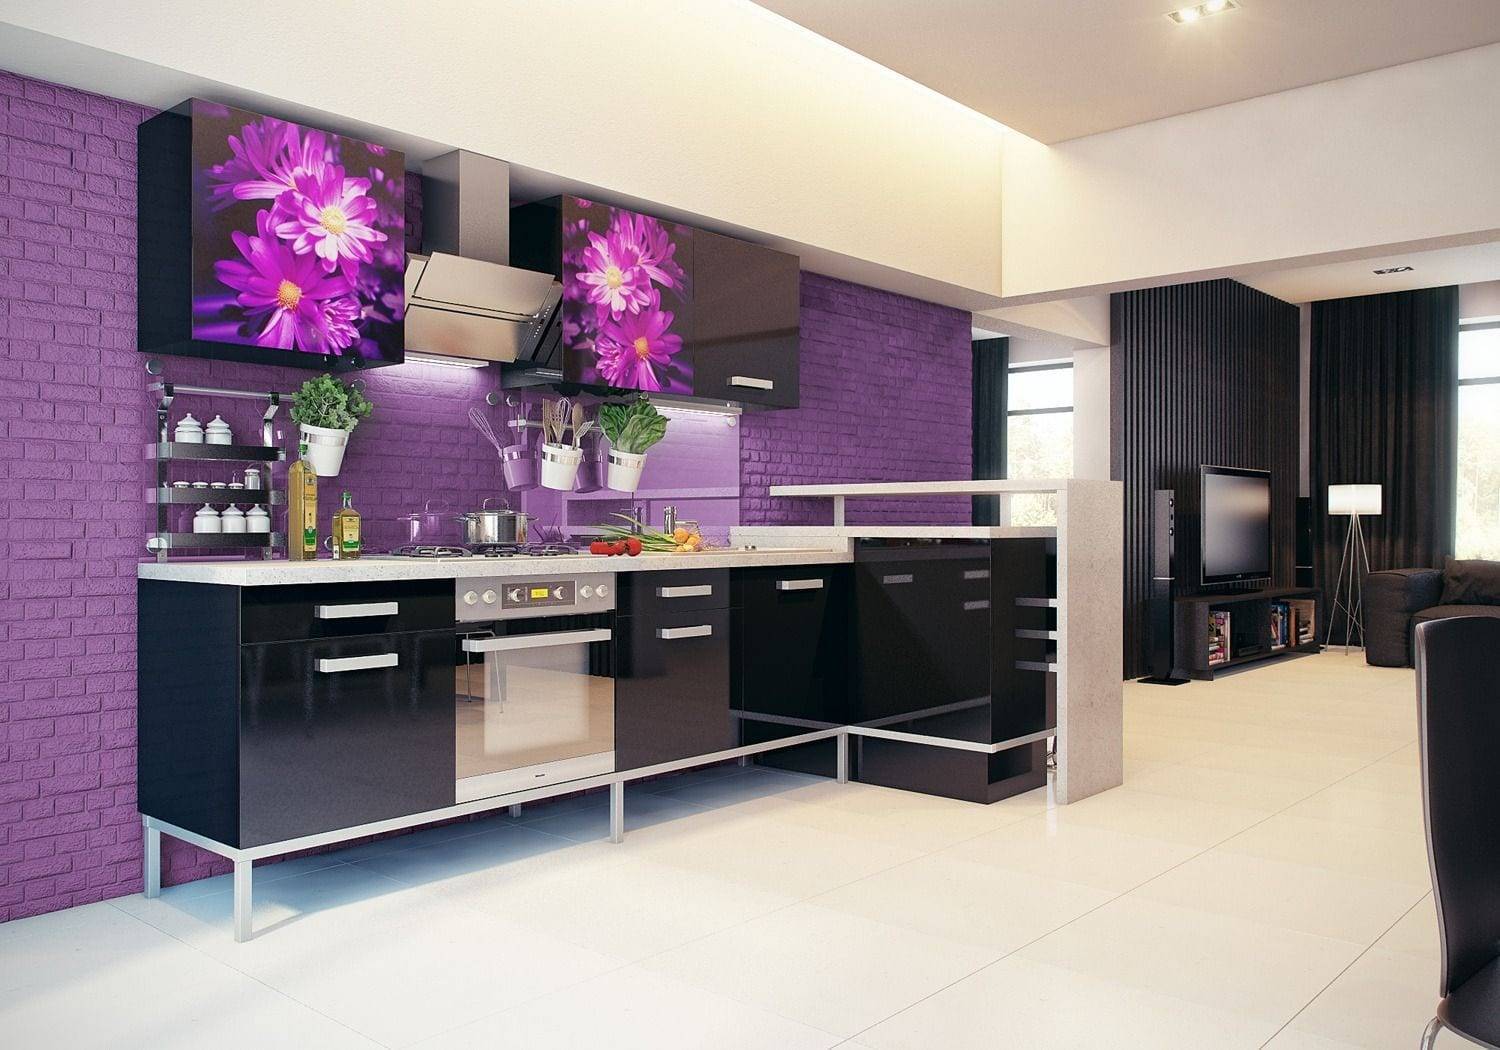 Кухня цвета баклажан: фото интерьера в баклажановом цвете, гарнитур и стулья